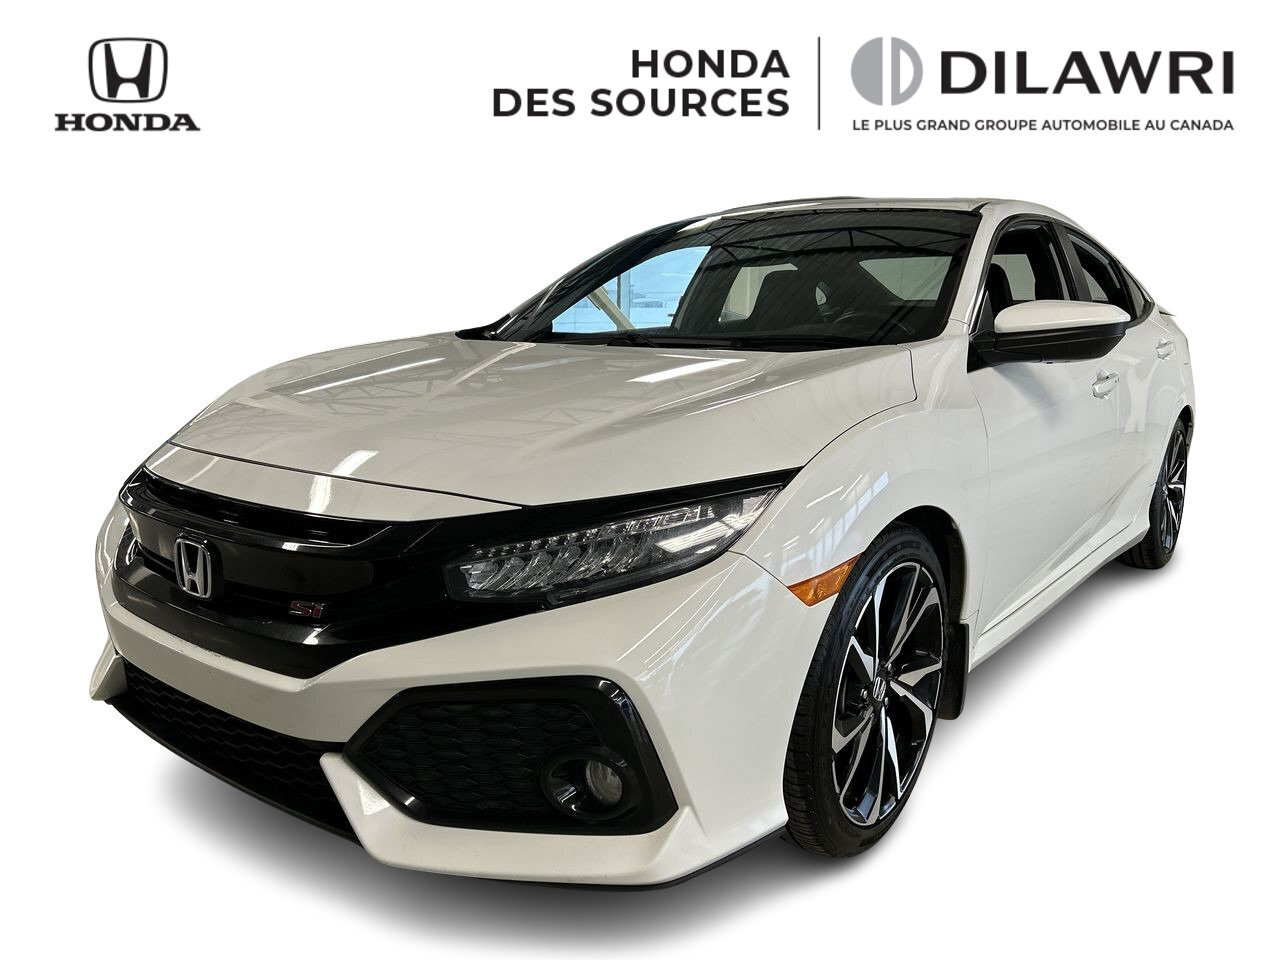 2019 Honda Civic Si Sedan Si Sedan, Nav, Carplay, Bluetooth, Caméra, Jantes 